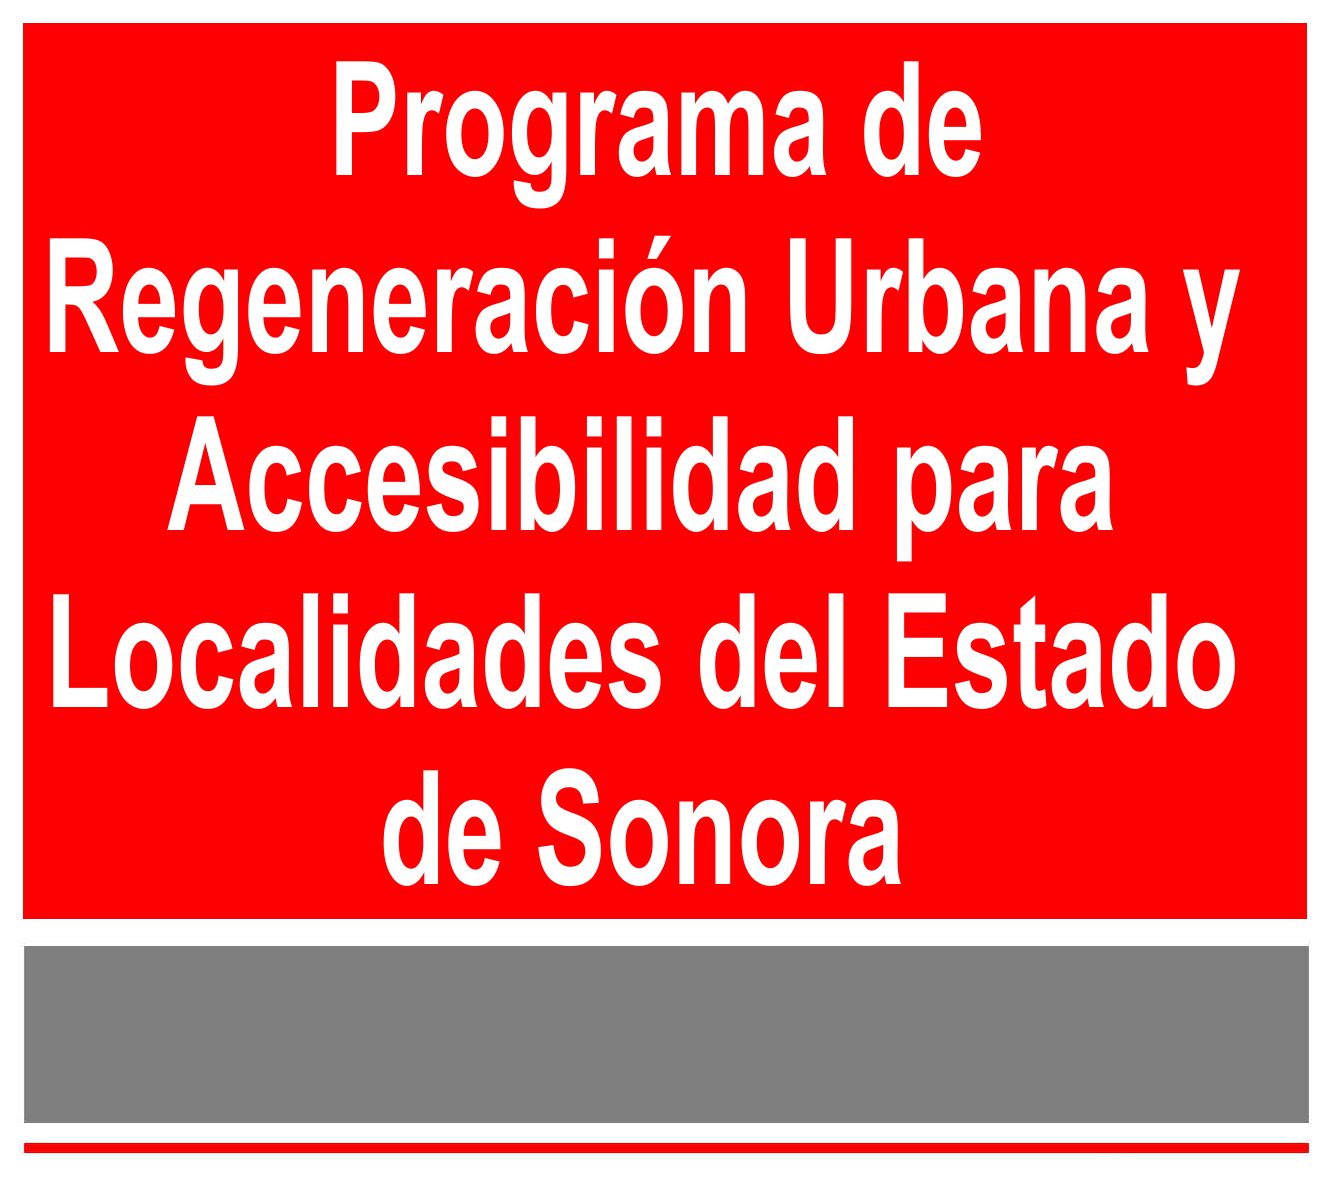 Programa de Regeneracion Urbana